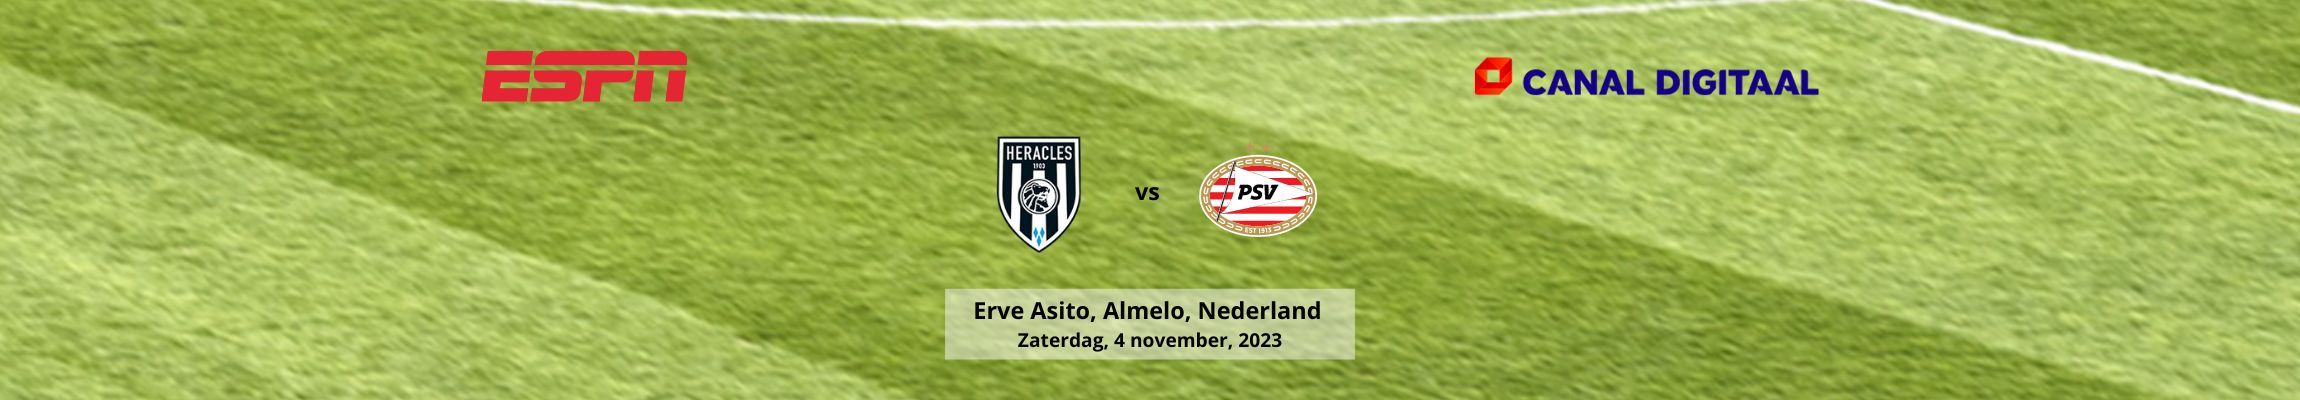 Heracles vs PSV